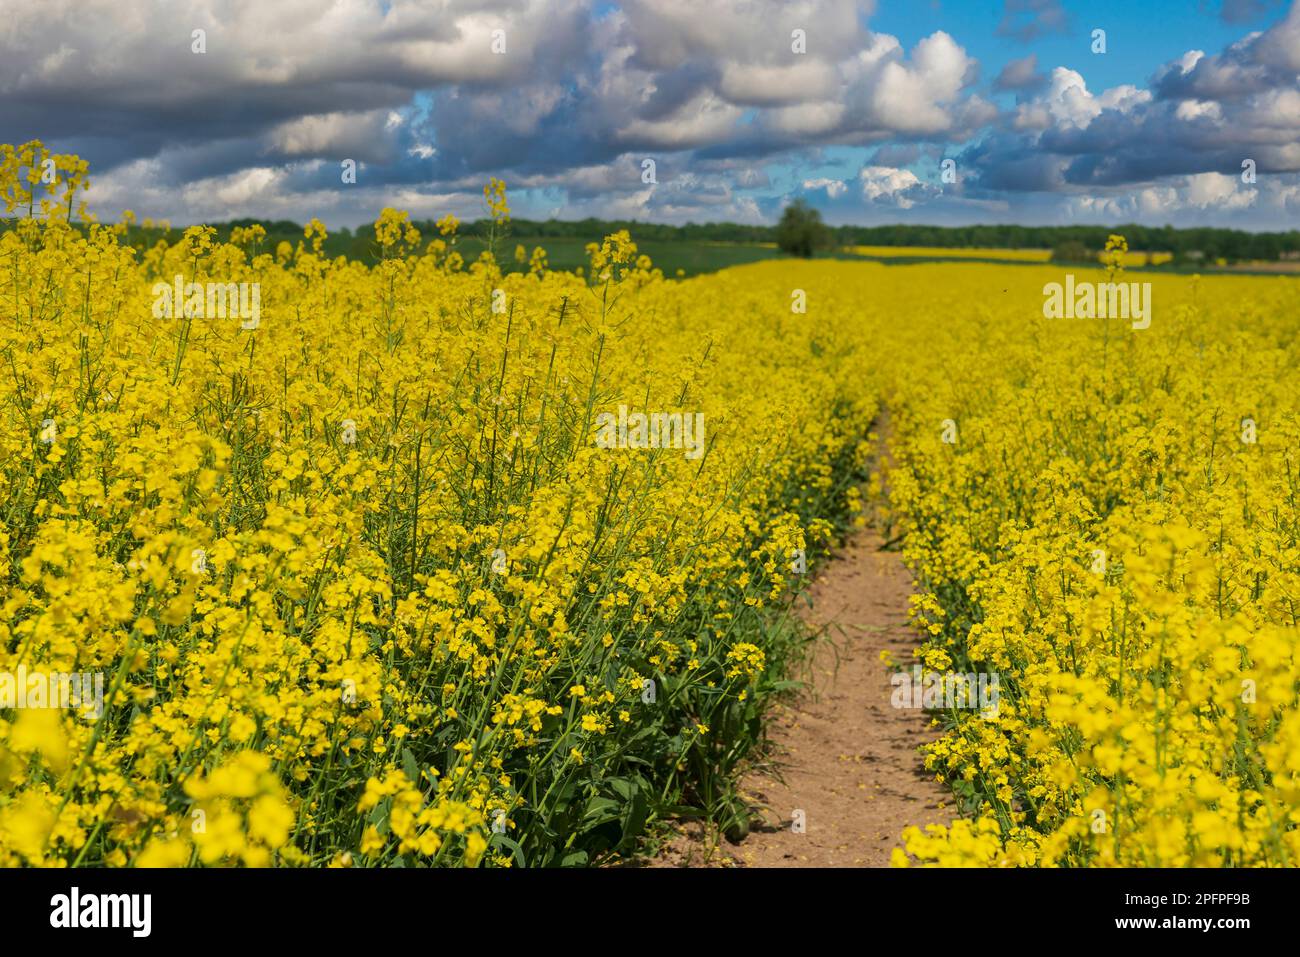 Bella strada nel campo di colza gialla. Paesaggio di campagna colorato con campo di canola fiorente, strada sterrata e cielo blu con le nuvole. Foto Stock